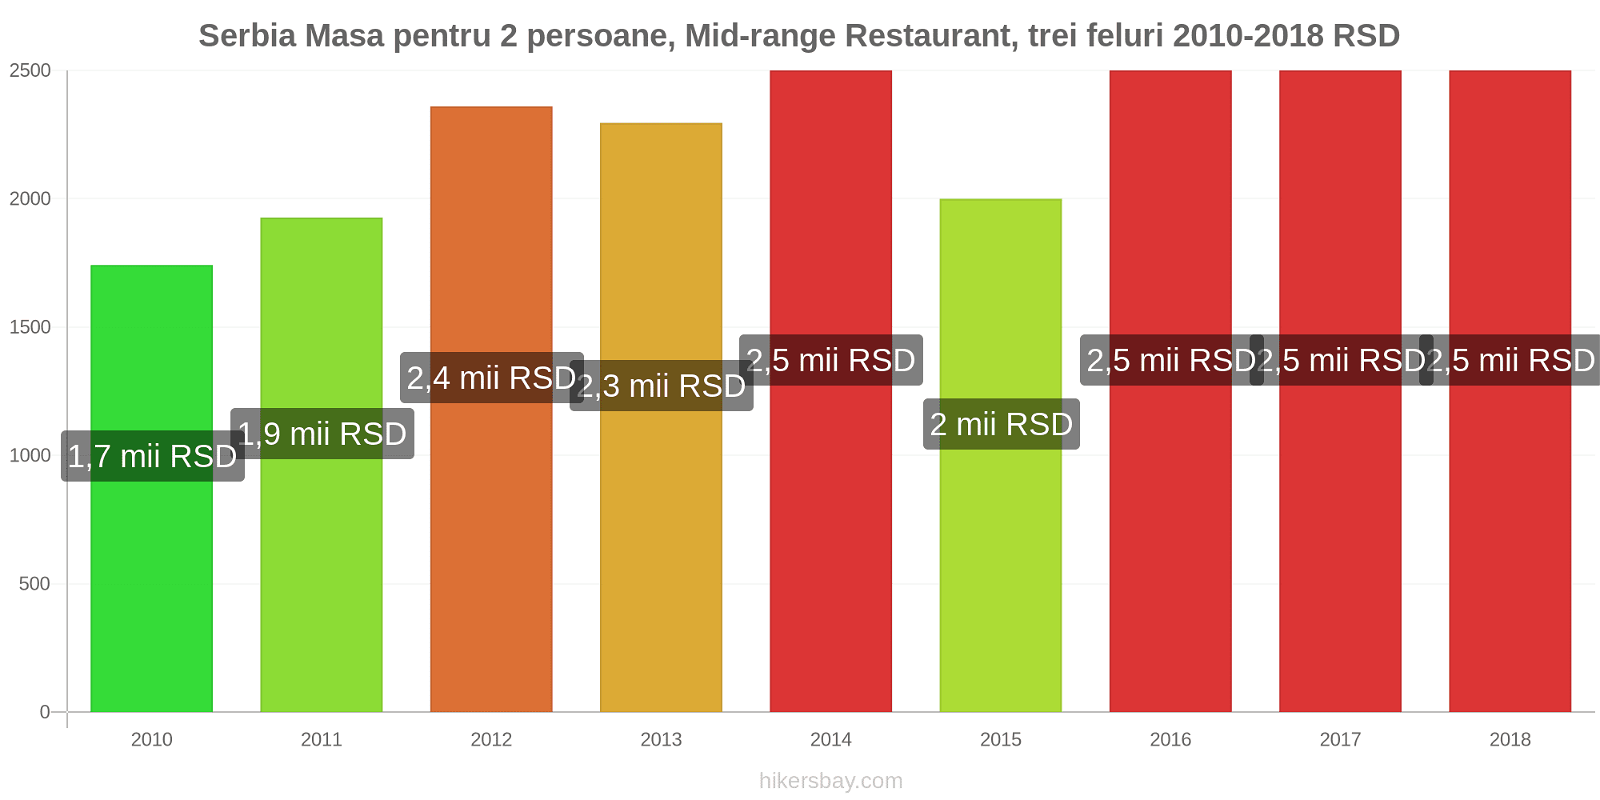 Serbia schimbări de prețuri Masă pentru 2 persoane, restaurant de gamă medie, trei feluri de mâncare hikersbay.com